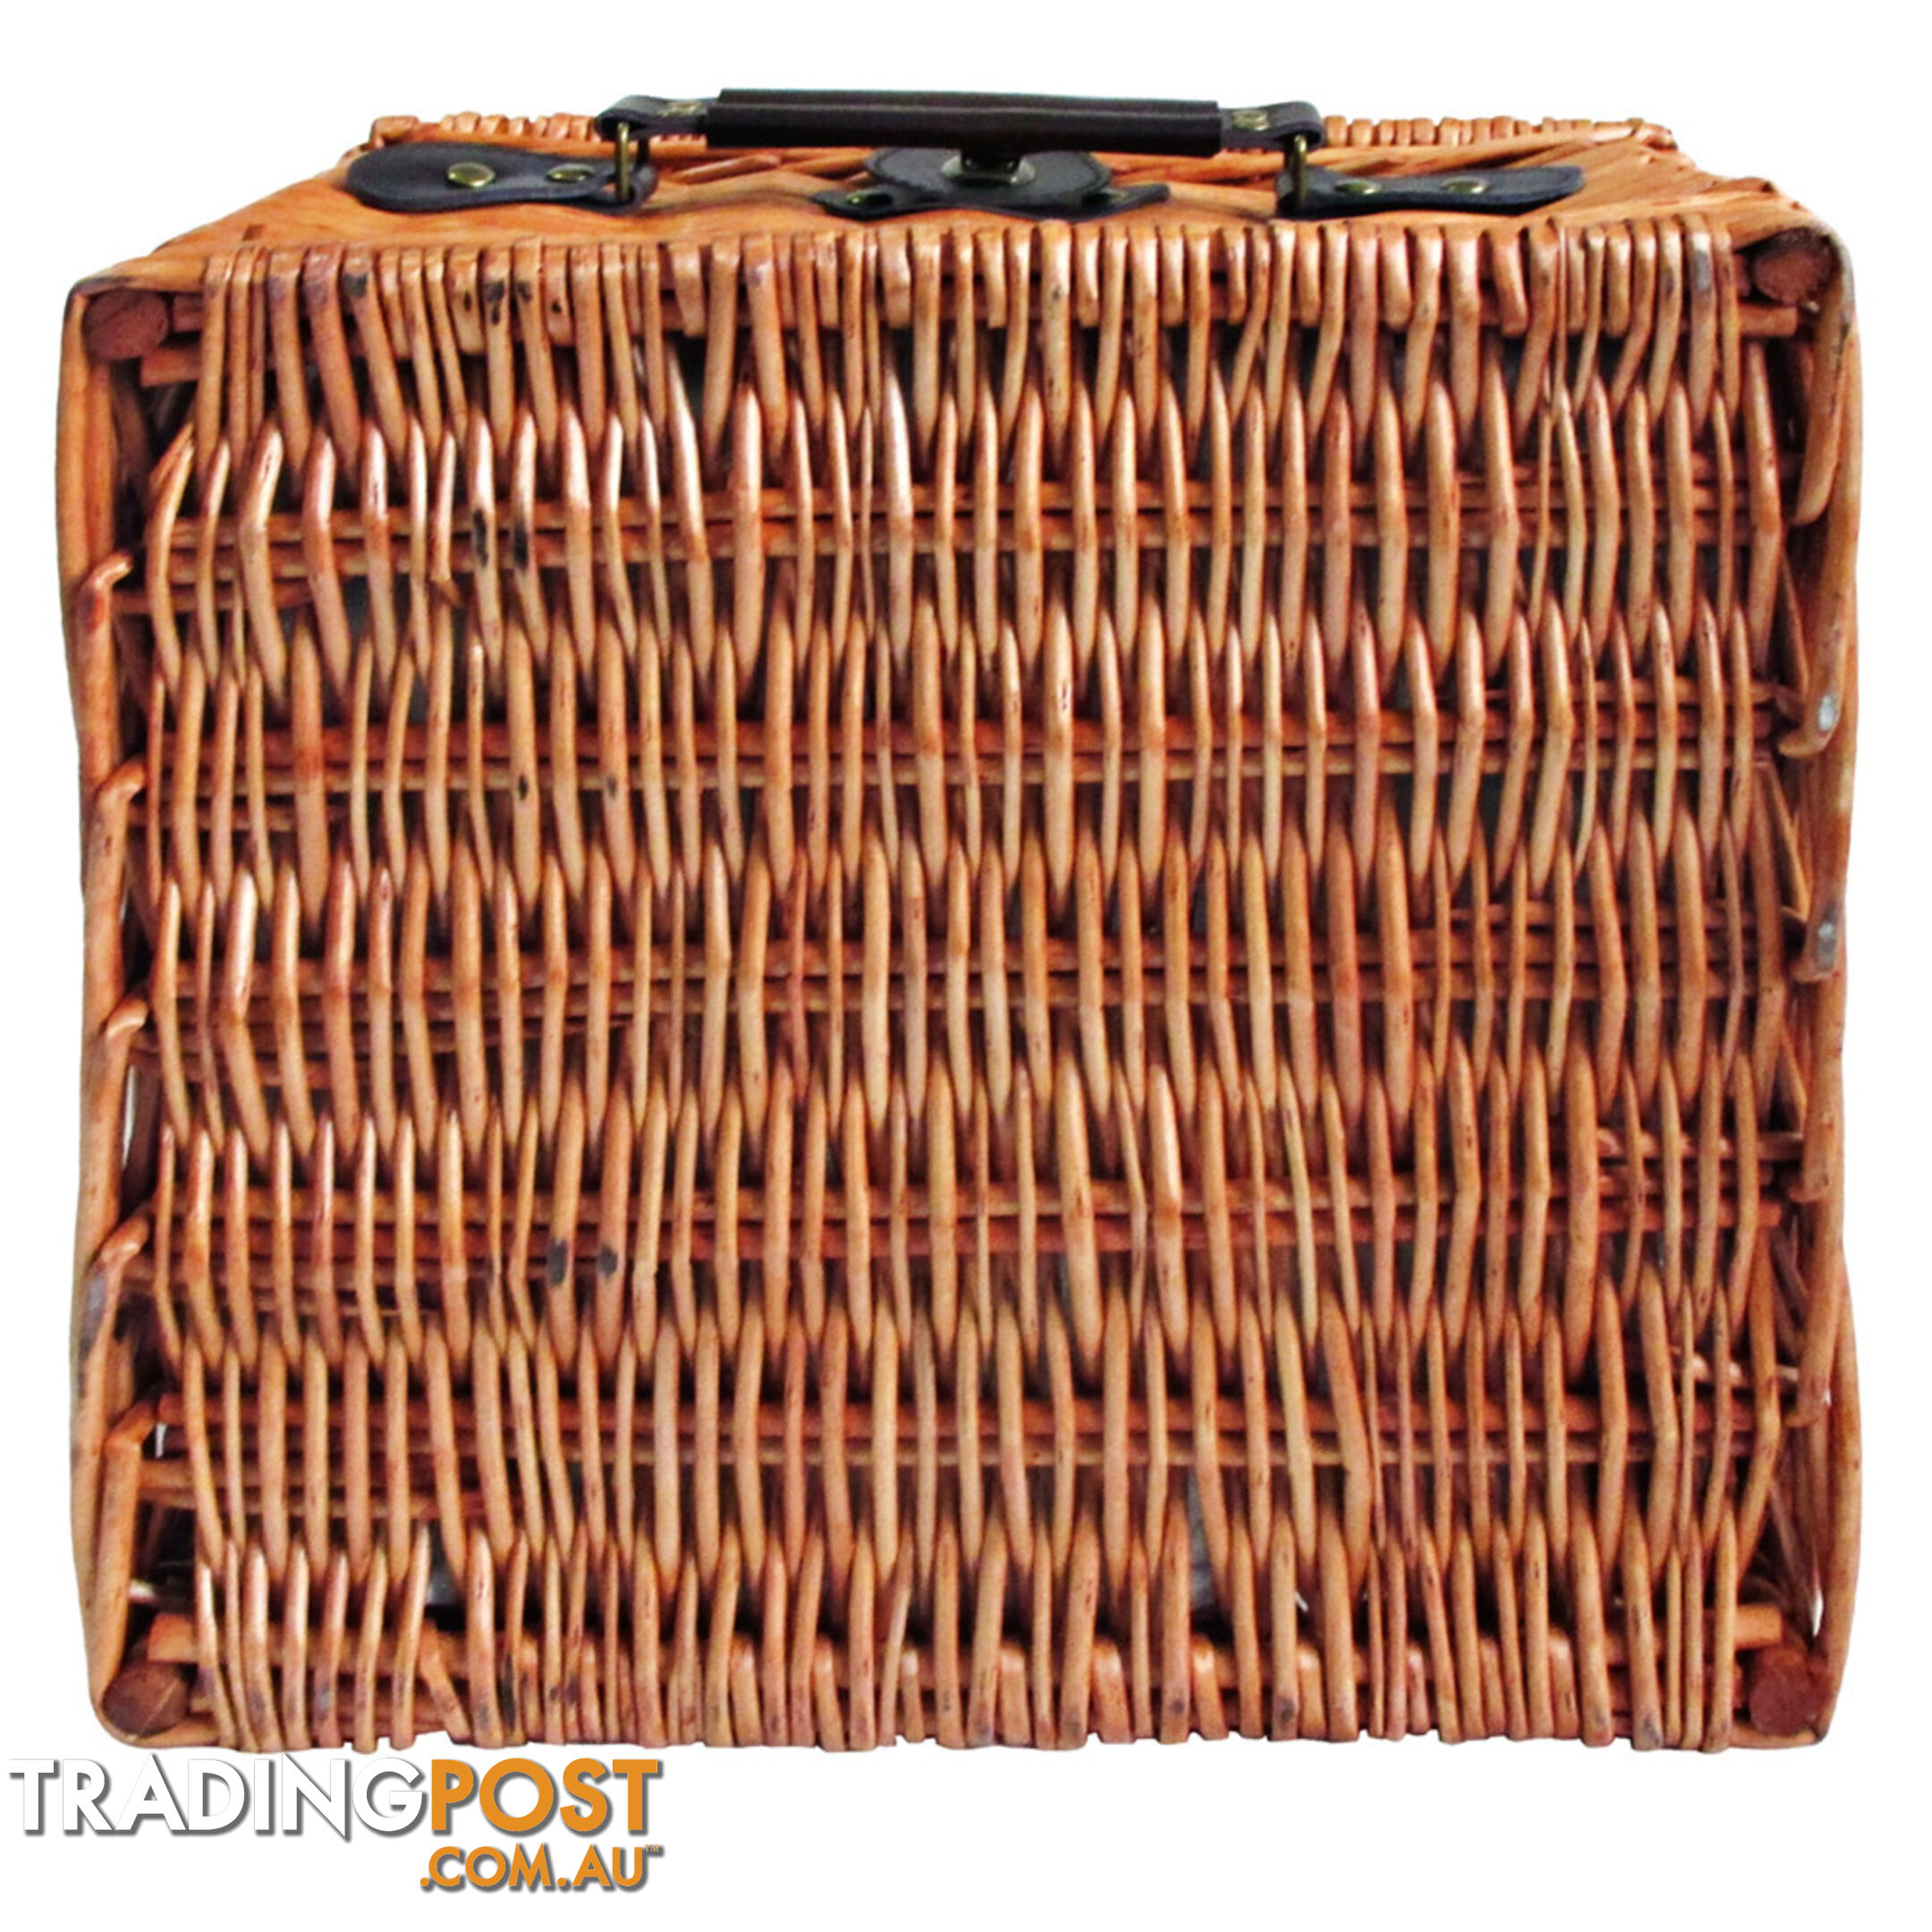 2 Person Picnic Basket Set w/ Cooler Bag Blanket